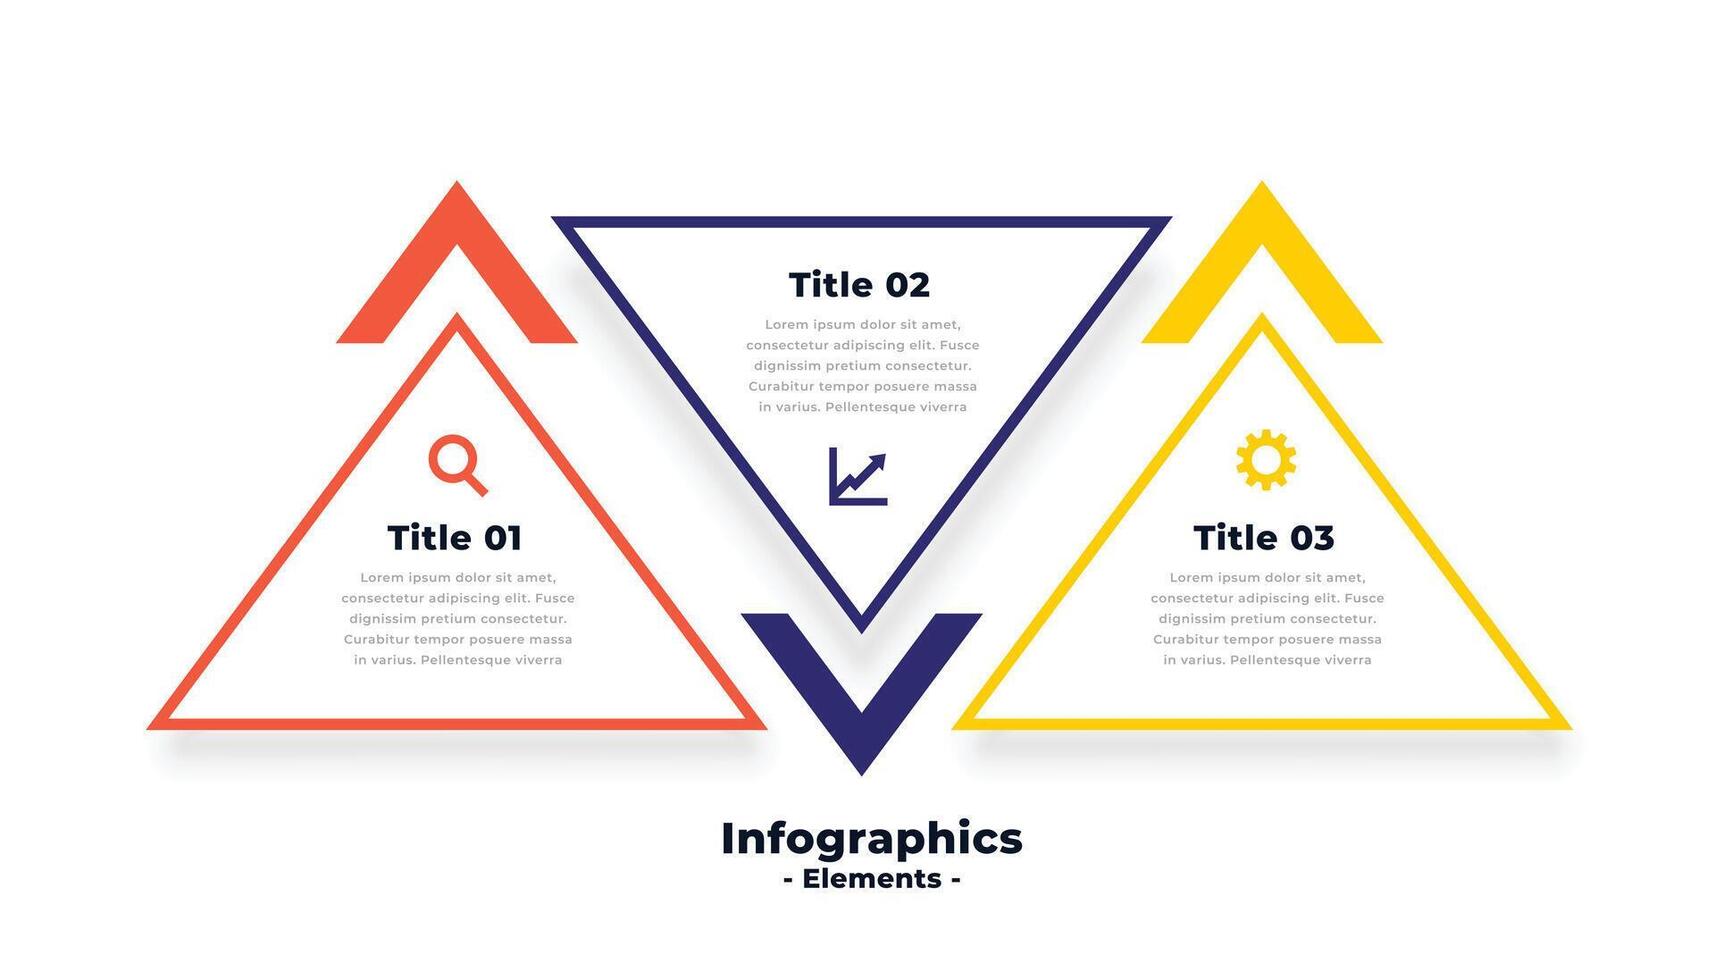 Dreieck gestalten drei Schritte Infografiken Vorlage Design vektor